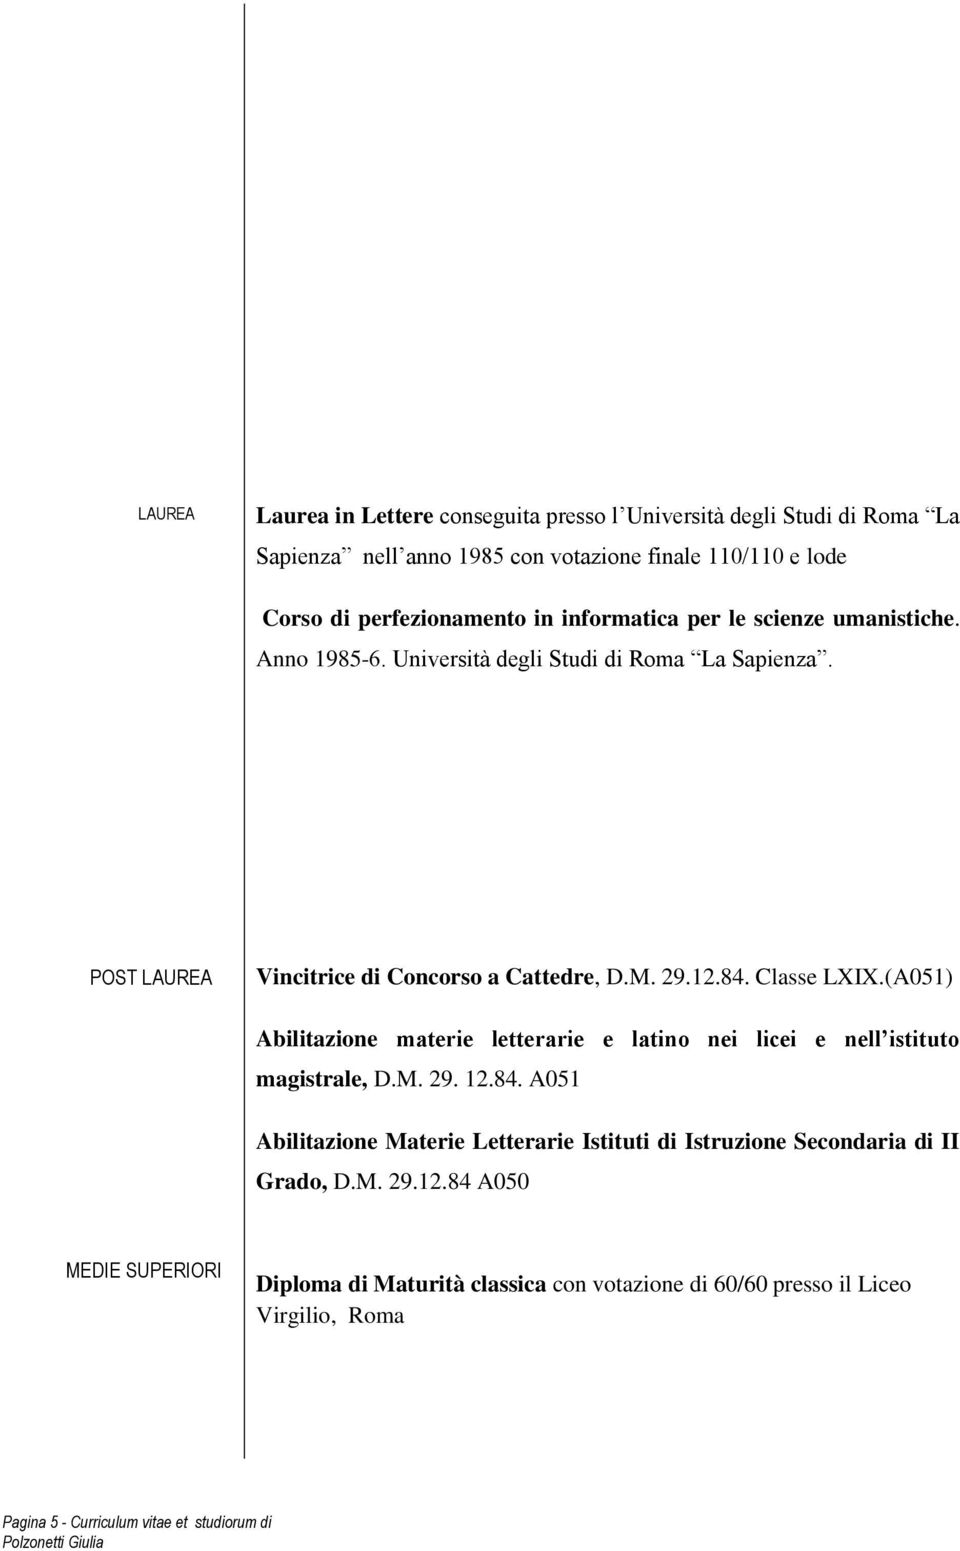 (A051) Abilitazione materie letterarie e latino nei licei e nell istituto magistrale, D.M. 29. 12.84.